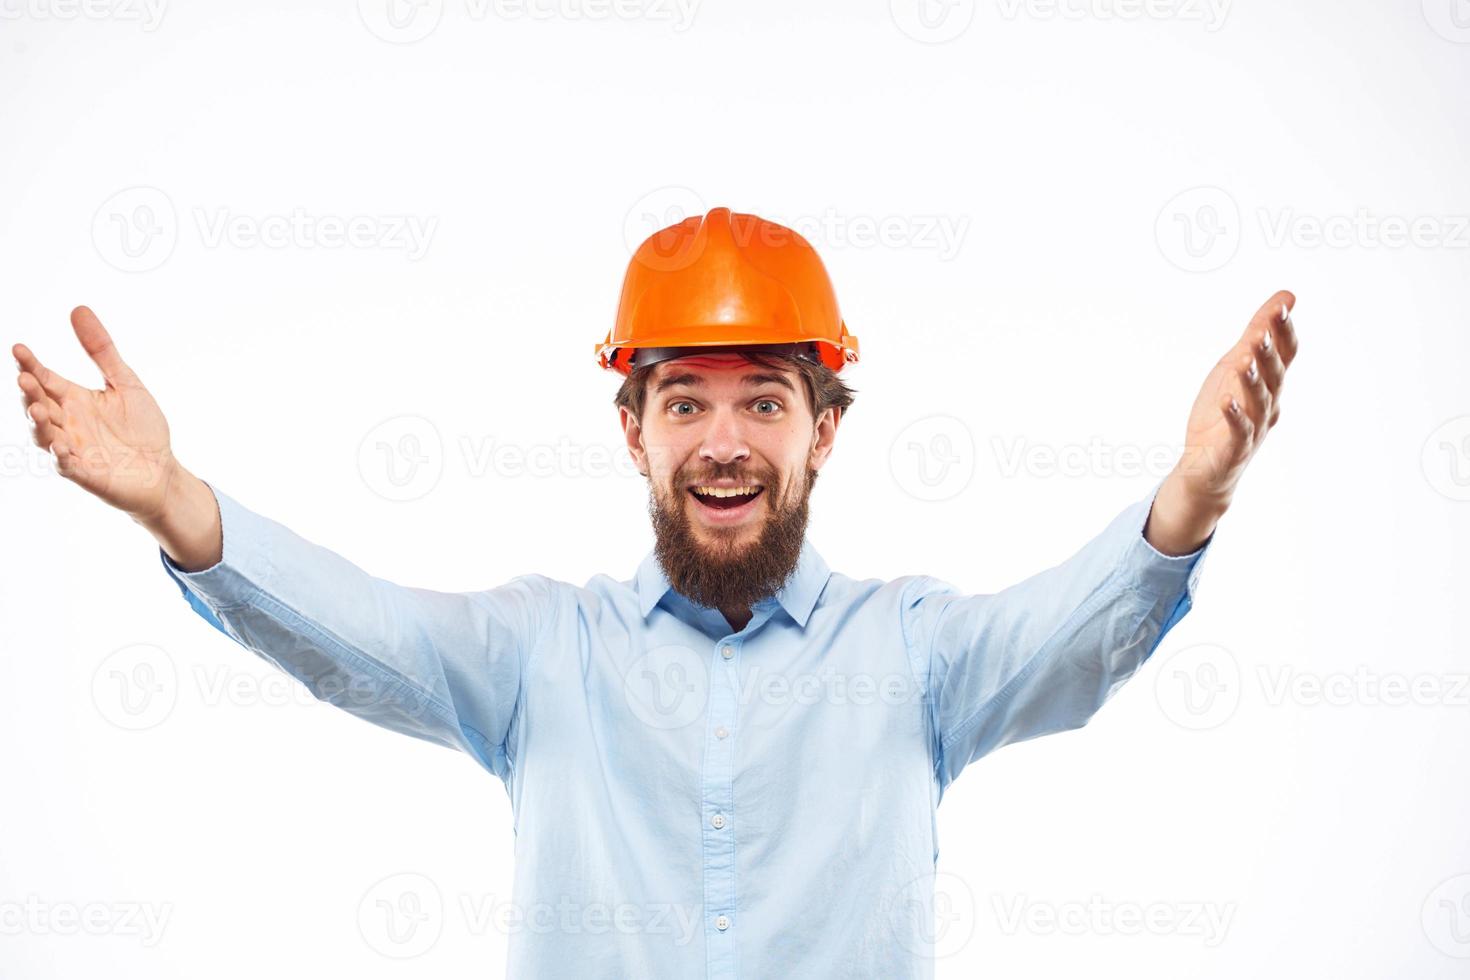 engenheiro dentro laranja segurança capacete dentro construção emoções profissional estilo de vida foto